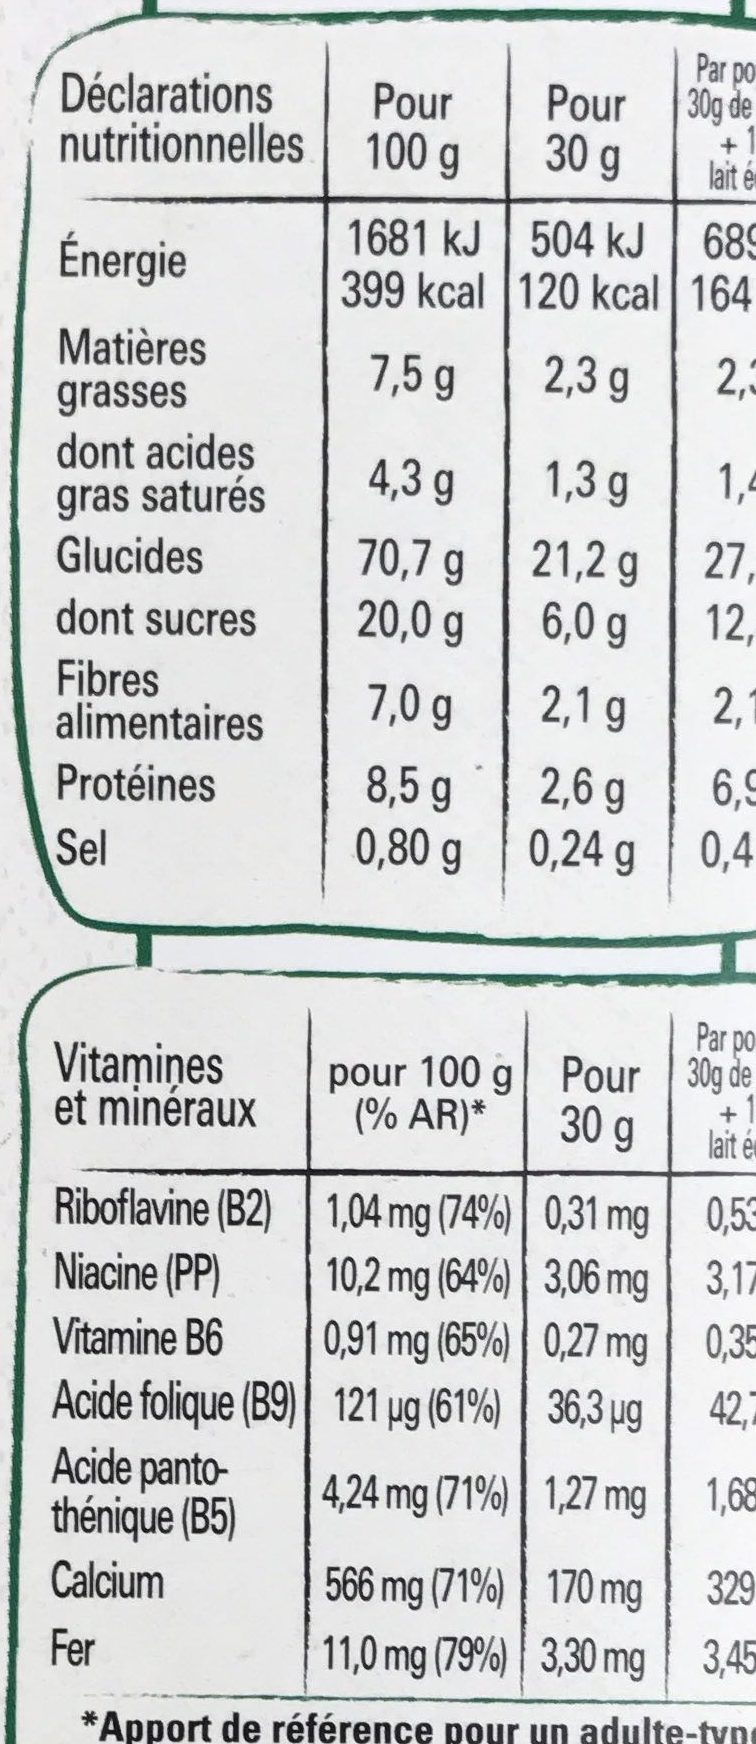 NESTLE FITNESS Chocolat au lait céréales 375g - حقائق غذائية - fr